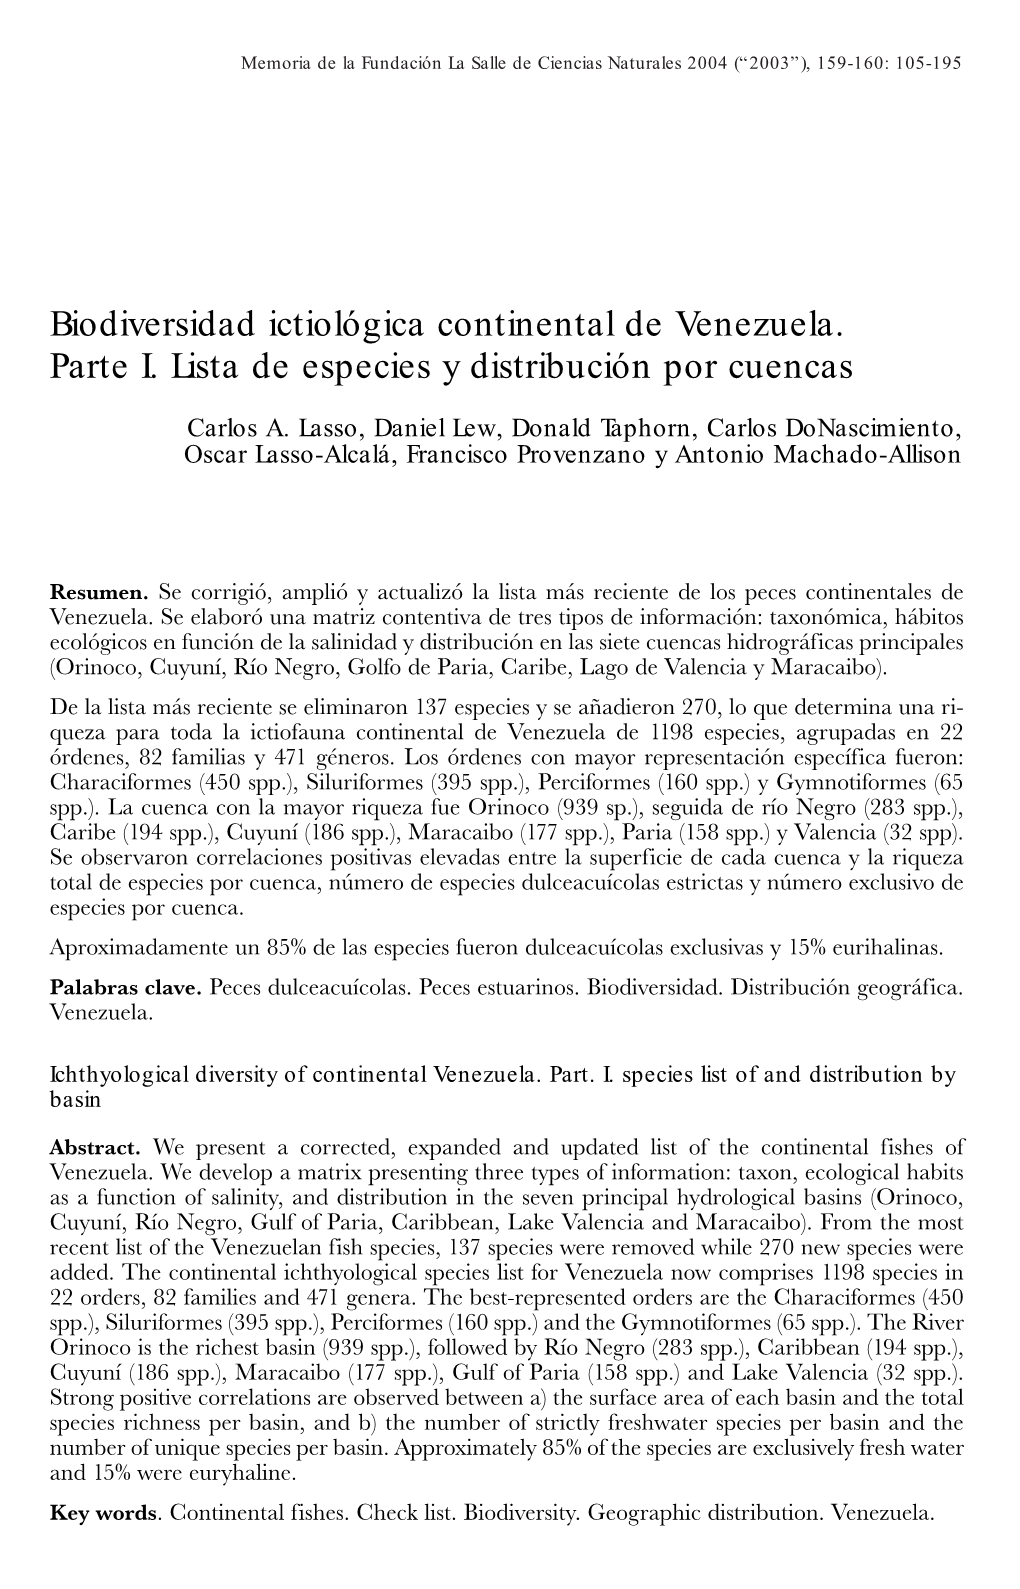 Biodiversidad Ictiológica Continental De Venezuela. Parte I. Lista De Especies Y Distribución Por Cuencas